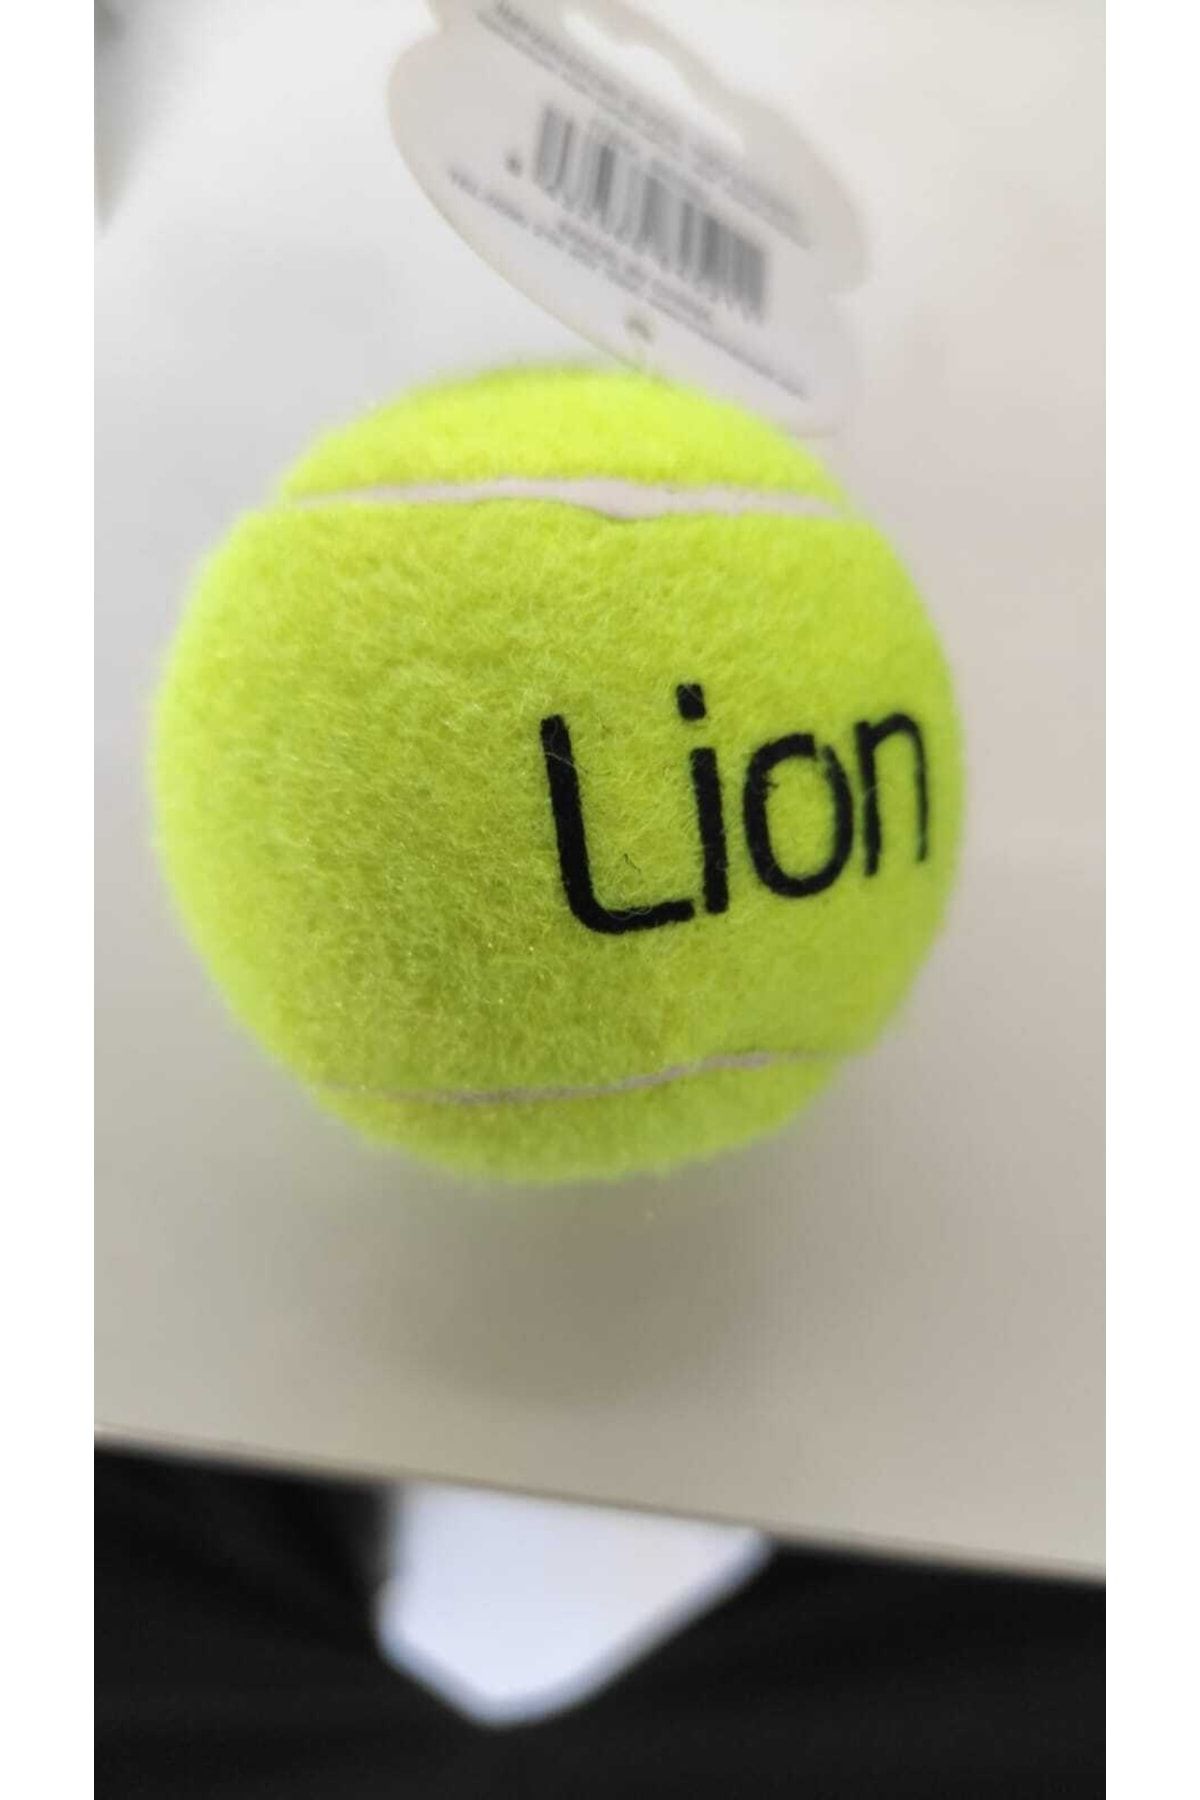 Düdüklü Köpek Tenis Topu Oyuncak_1